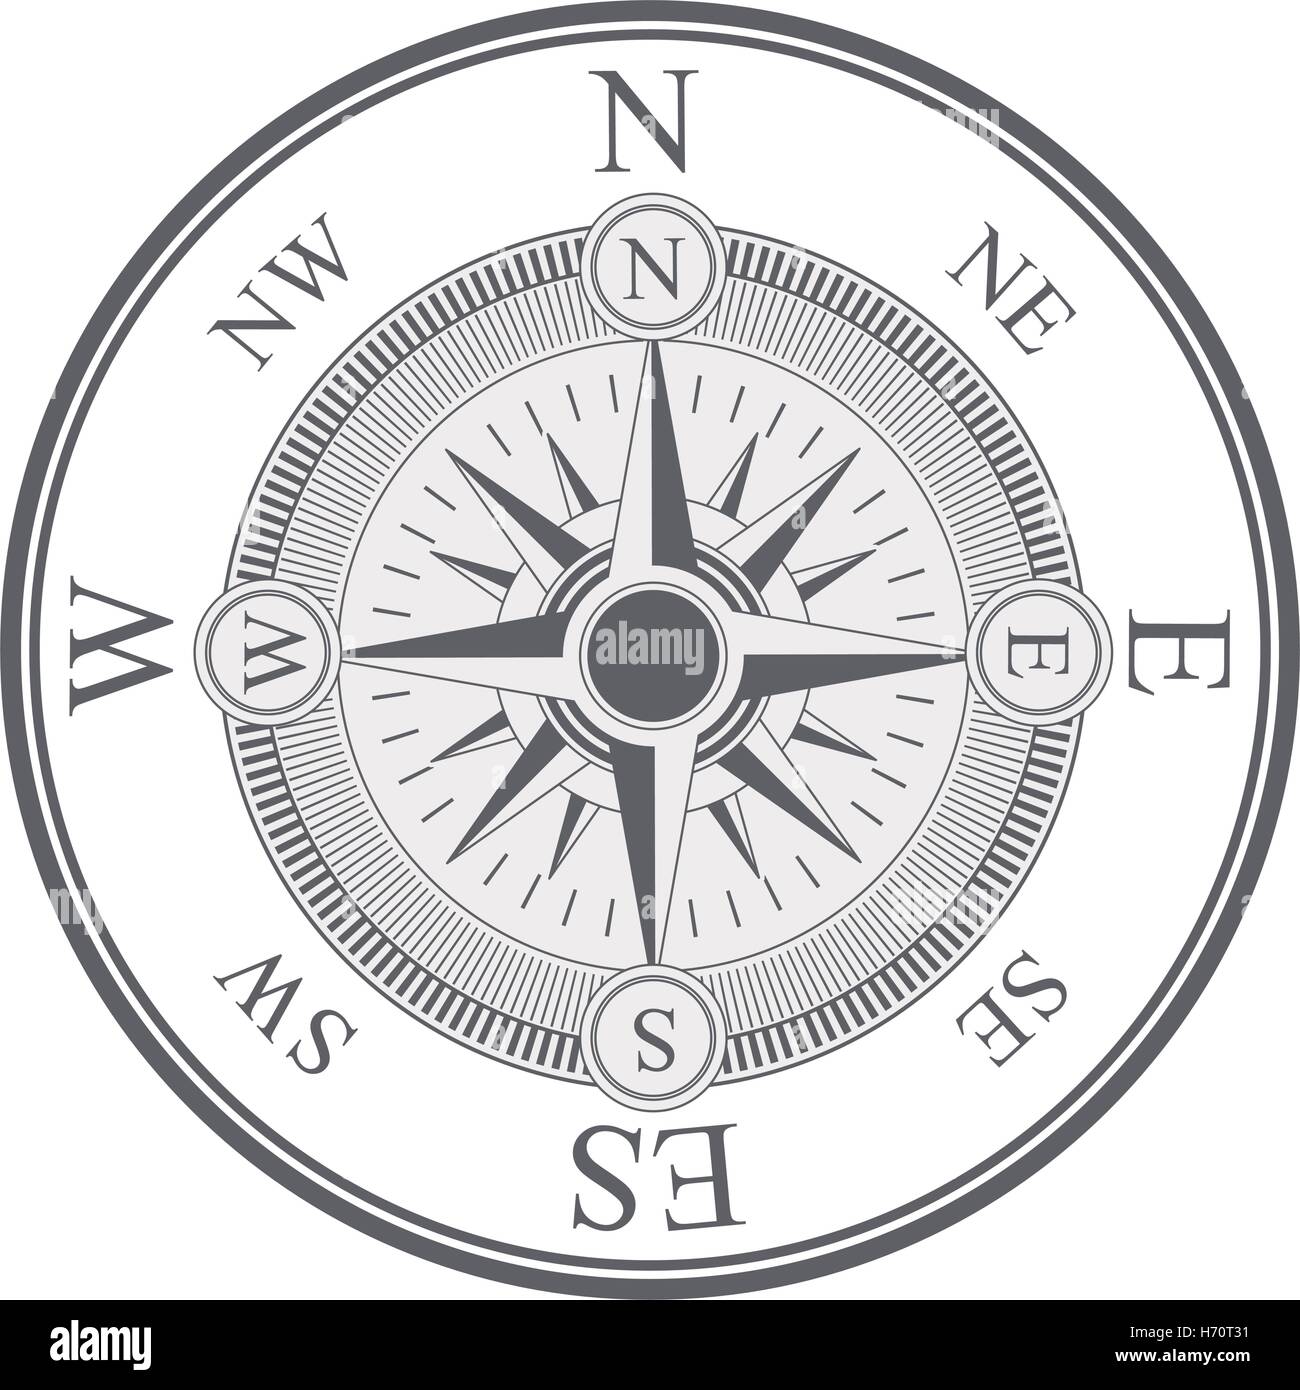 Vintage Kompass Windrose Symbol auf weißem Hintergrund. Navigation und  Design unterwegs. Vektor-illustration Stock-Vektorgrafik - Alamy